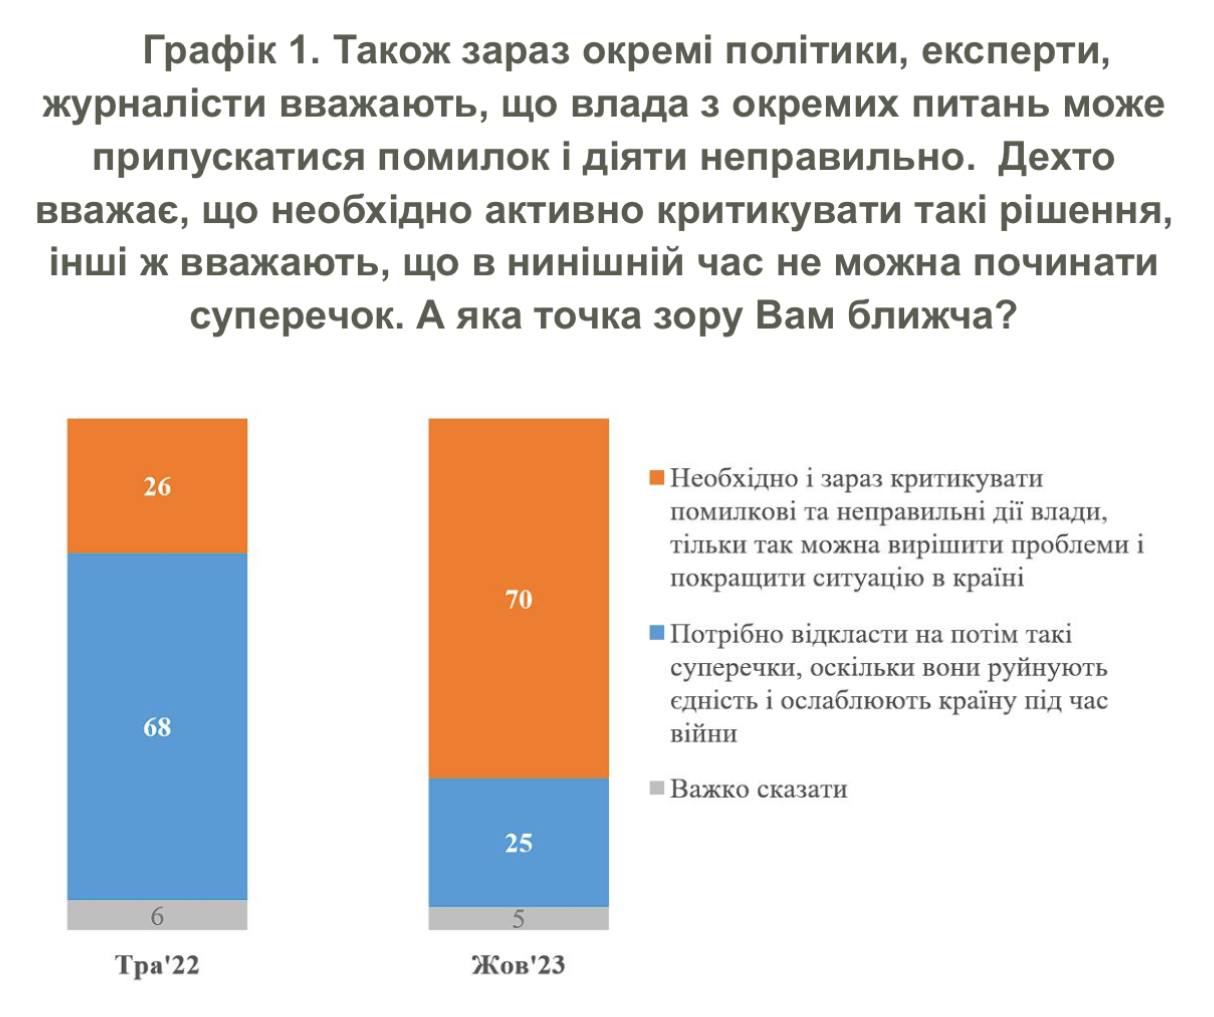 70% українців вважають, що владу потрібно критикувати